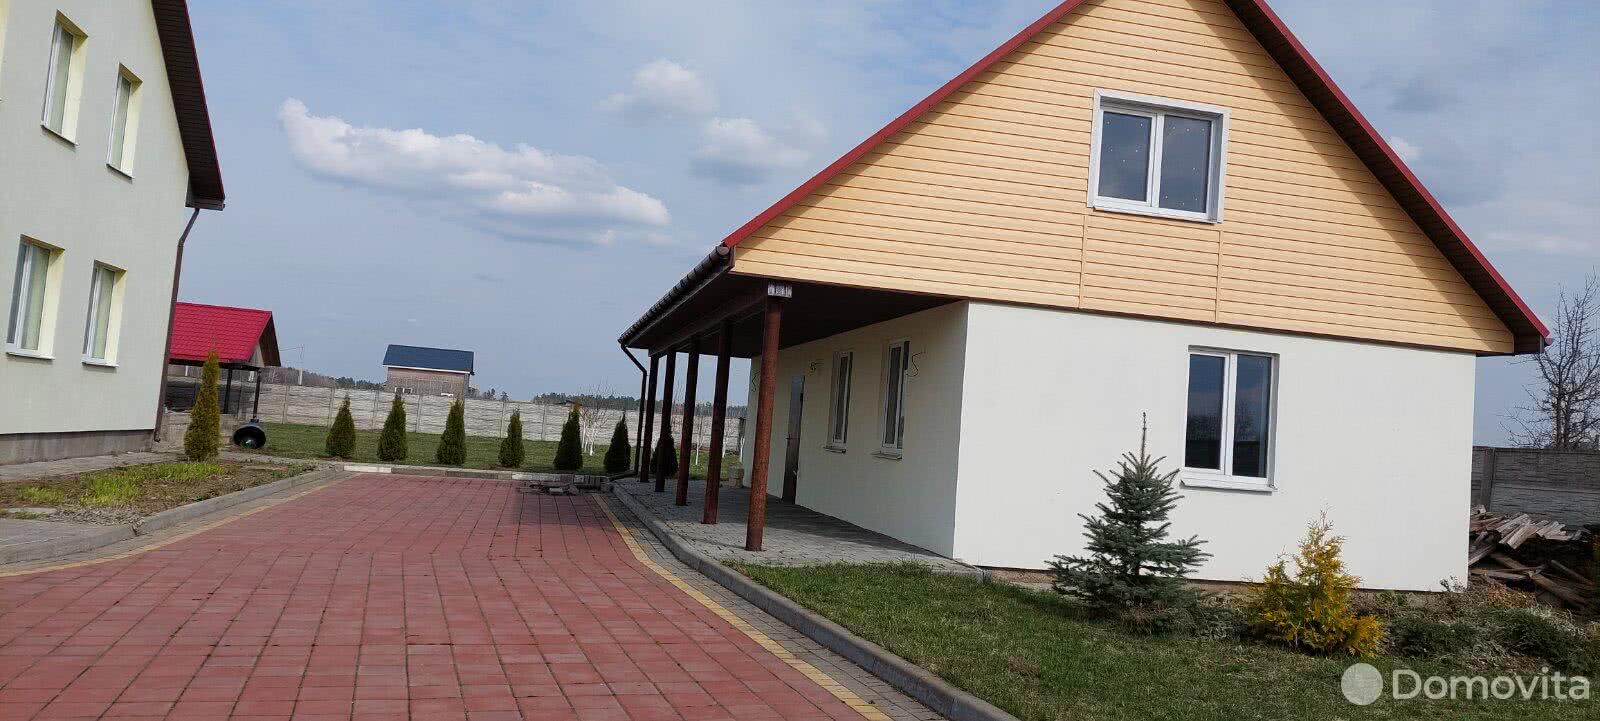 Продажа 2-этажного дома в Вязье, Могилевская область ул. Восточная, 89900USD, код 633862 - фото 2